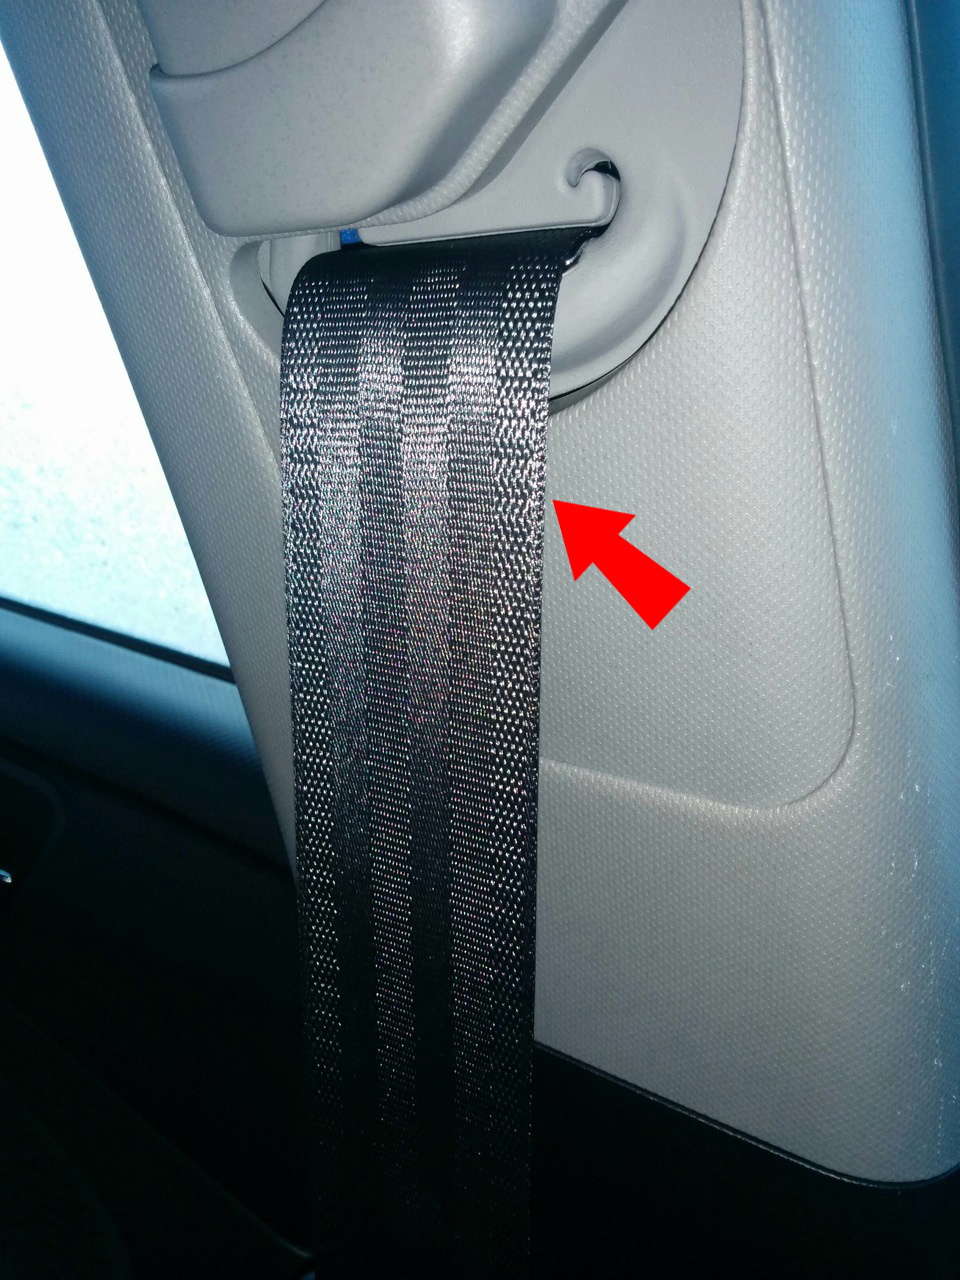 Вытянуть ремень безопасности из катушки на автомобиле Hyundai Solaris 2010-2016